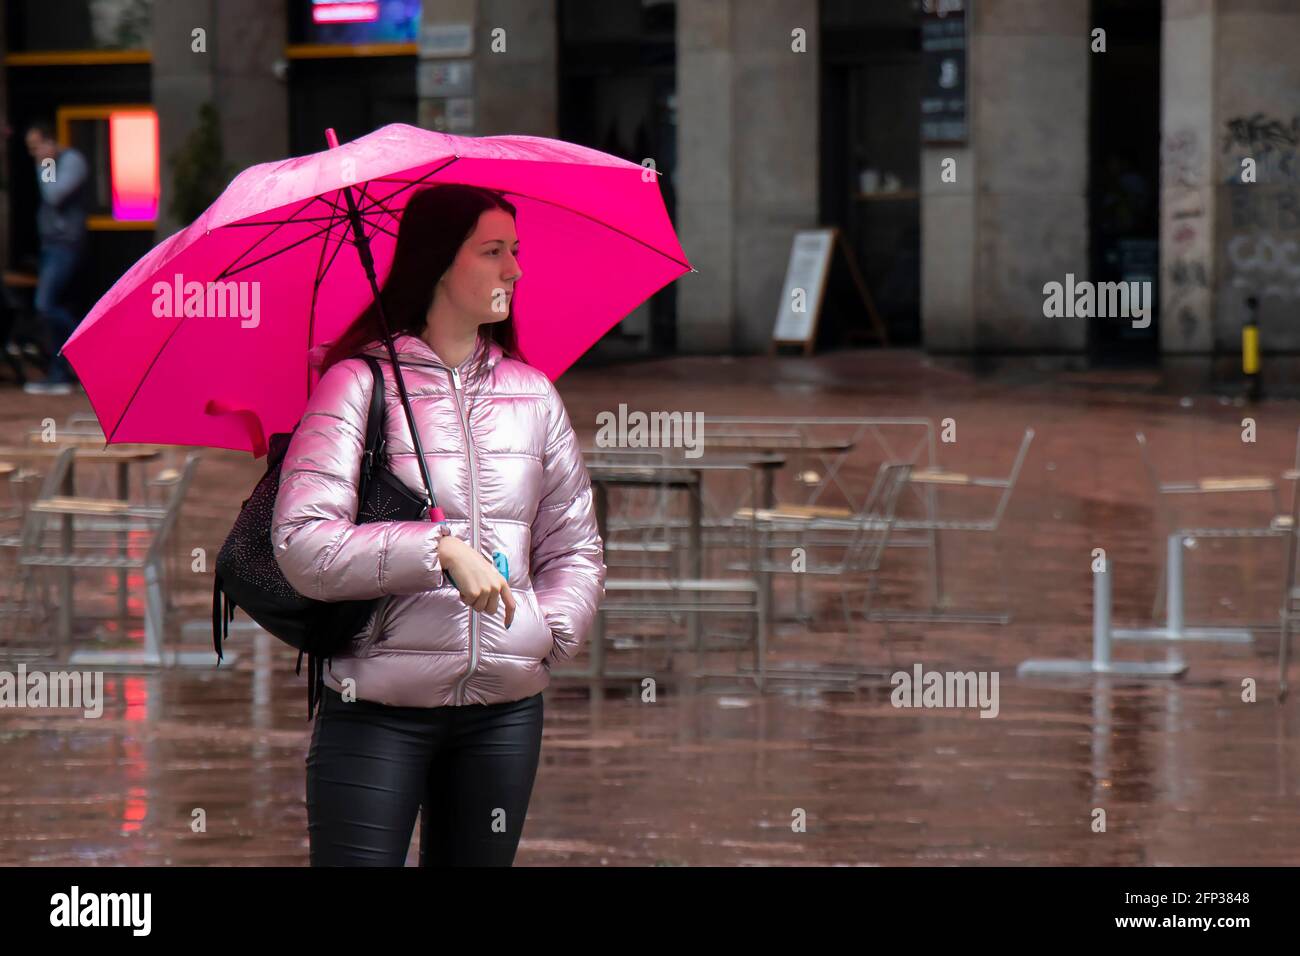 Belgrad, Serbien - 13. Mai 2021: Eine junge Frau, die allein unter dem Schirm steht und an einem regnerischen Tag auf dem Stadtplatz wartet Stockfoto